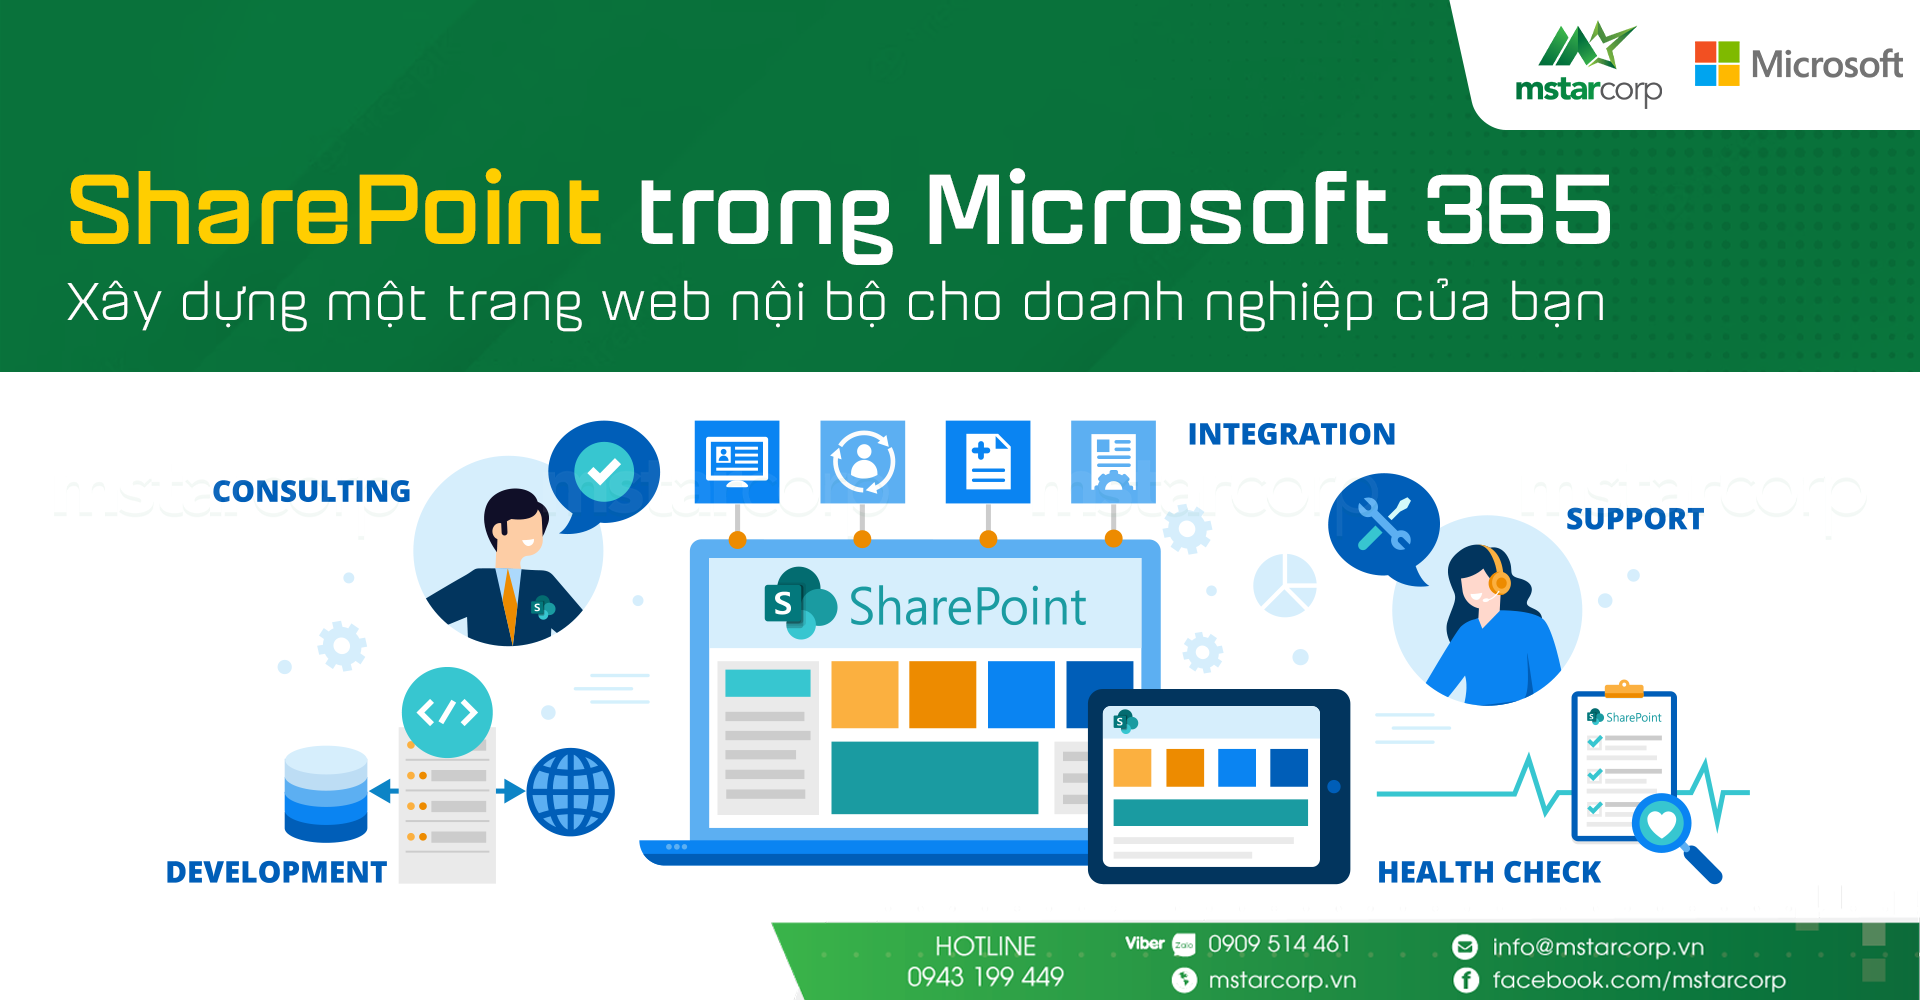 SharePoint trong Microsoft 365: Xây dựng một trang web nội bộ cho doanh nghiệp của bạn